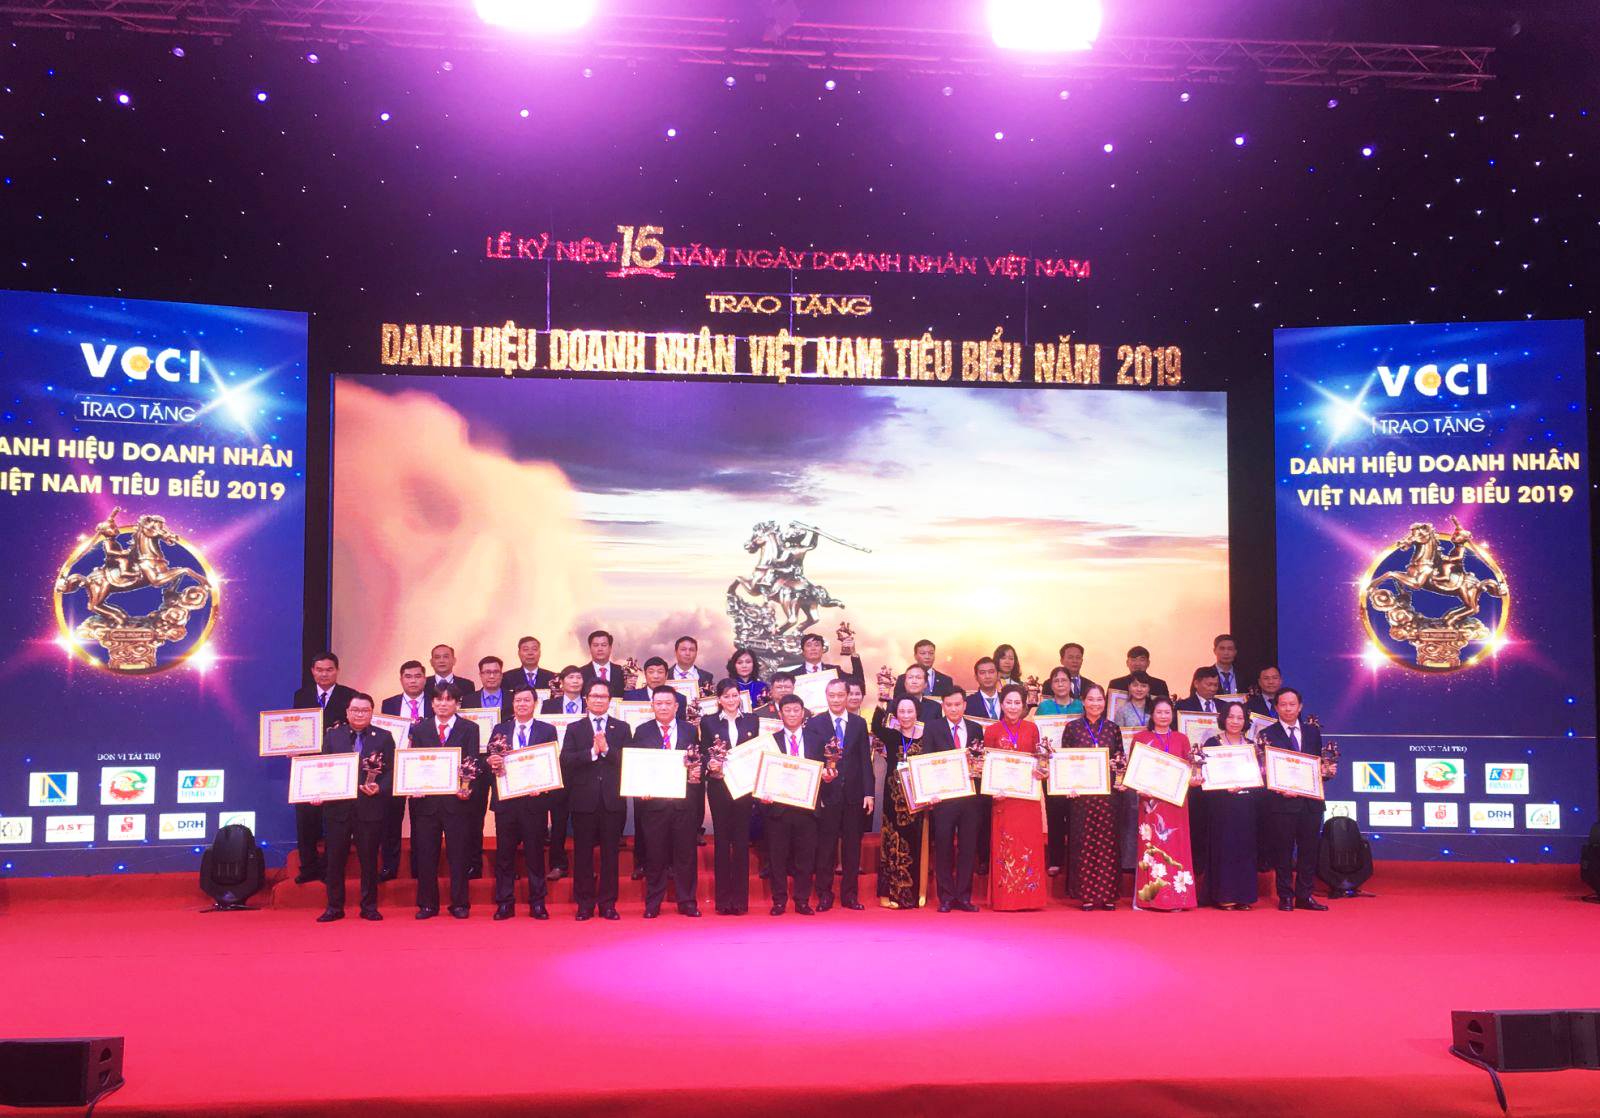 Chủ tịch Đinh Hồng Kỳ vinh dự được VCCI trao tặng danh hiệu Doanh nhân Việt Nam tiêu biểu năm 2019